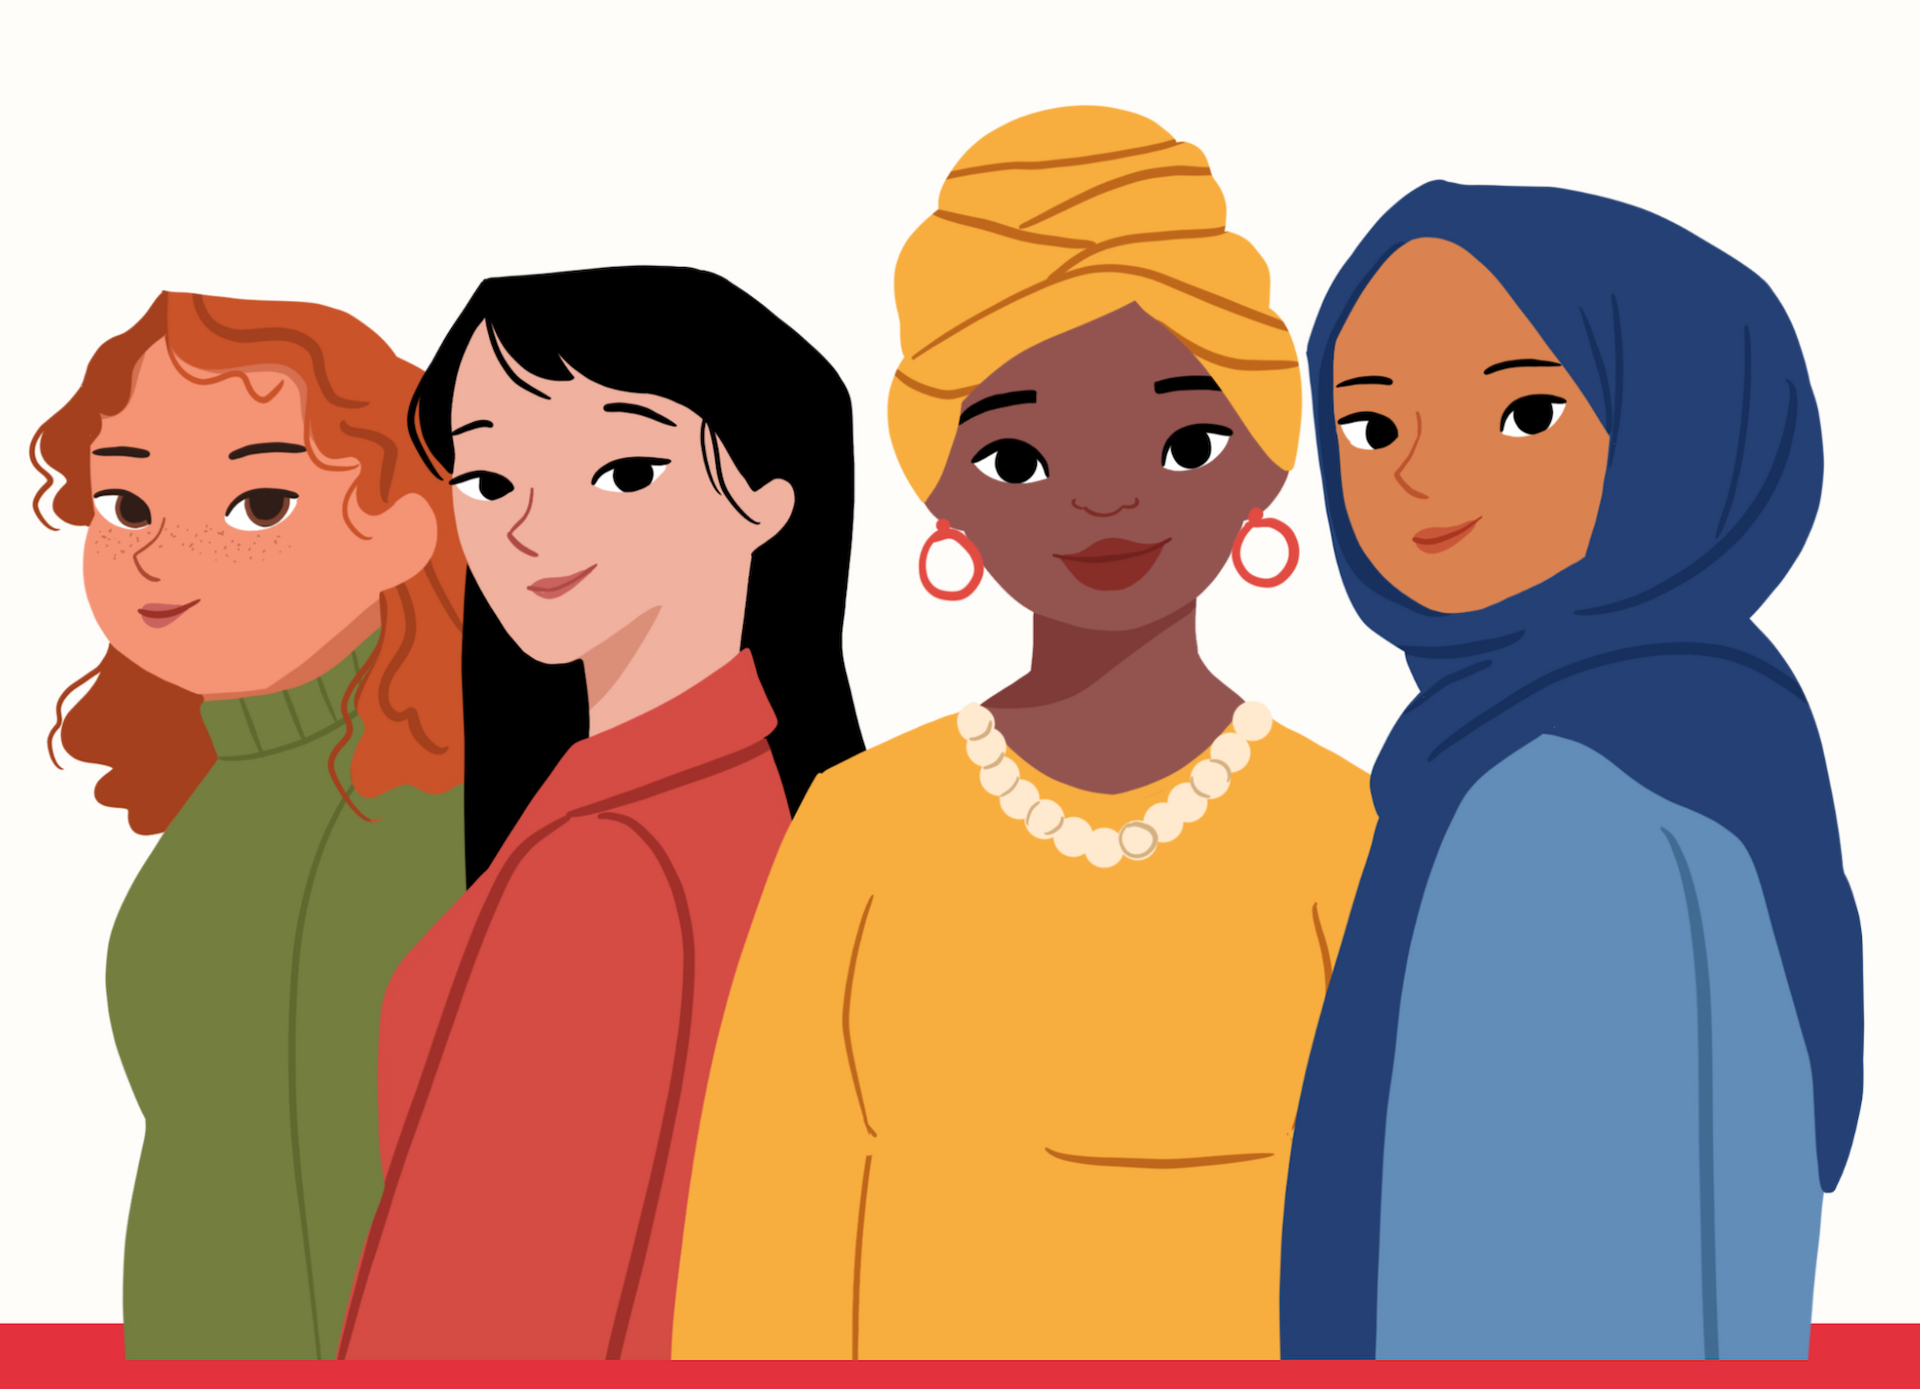 illustration von vier Frauen mit unterschiedlichen Hautfarben und unterschiedlicher Herkunft, eine Frau mit Turban, eine mit Kopftuch